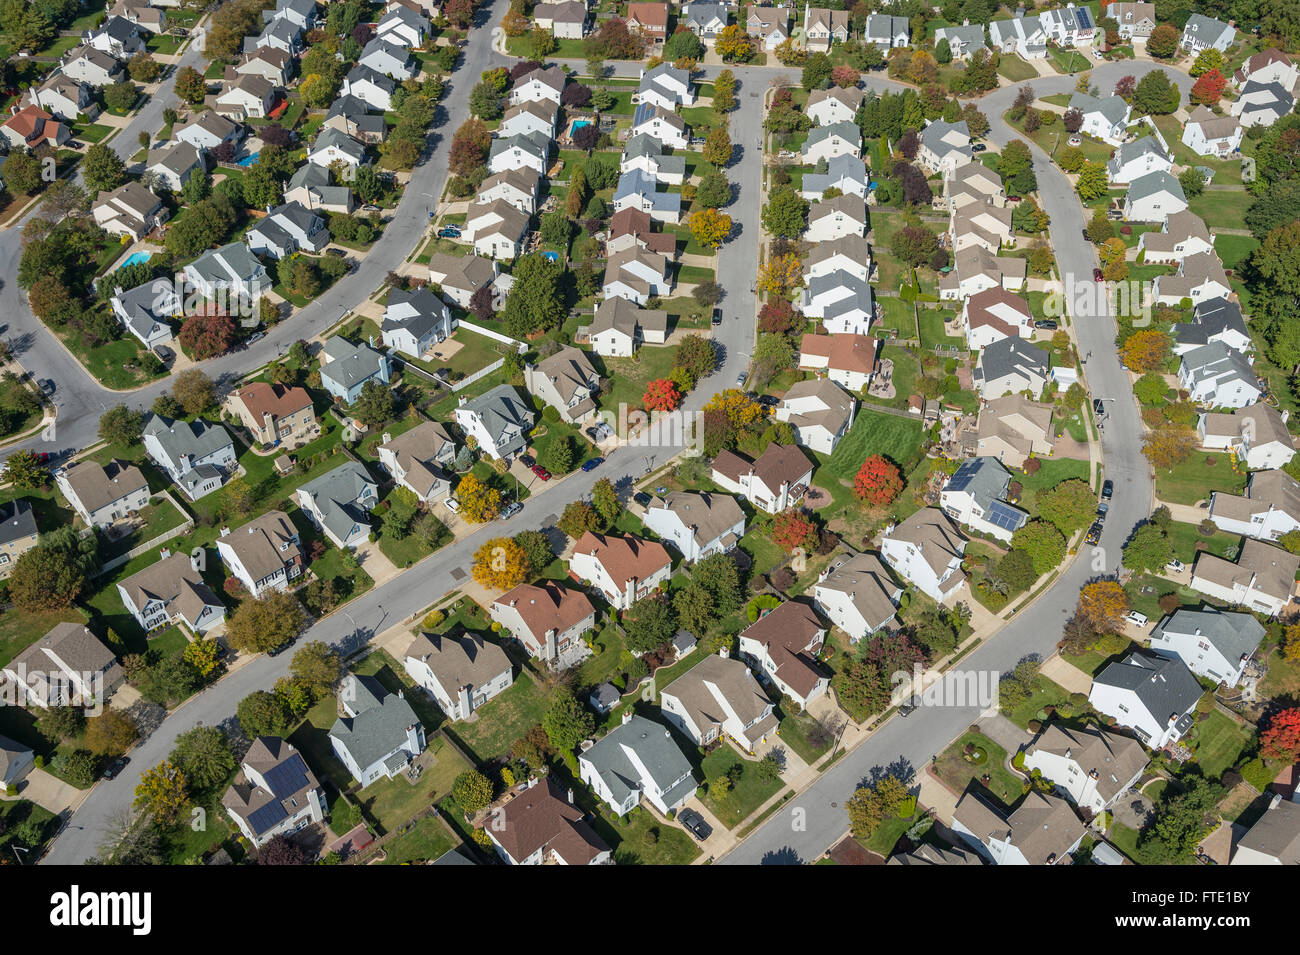 Vista aerea della zona residenziale di case nella zona suburbana, New Jersey, STATI UNITI D'AMERICA Foto Stock